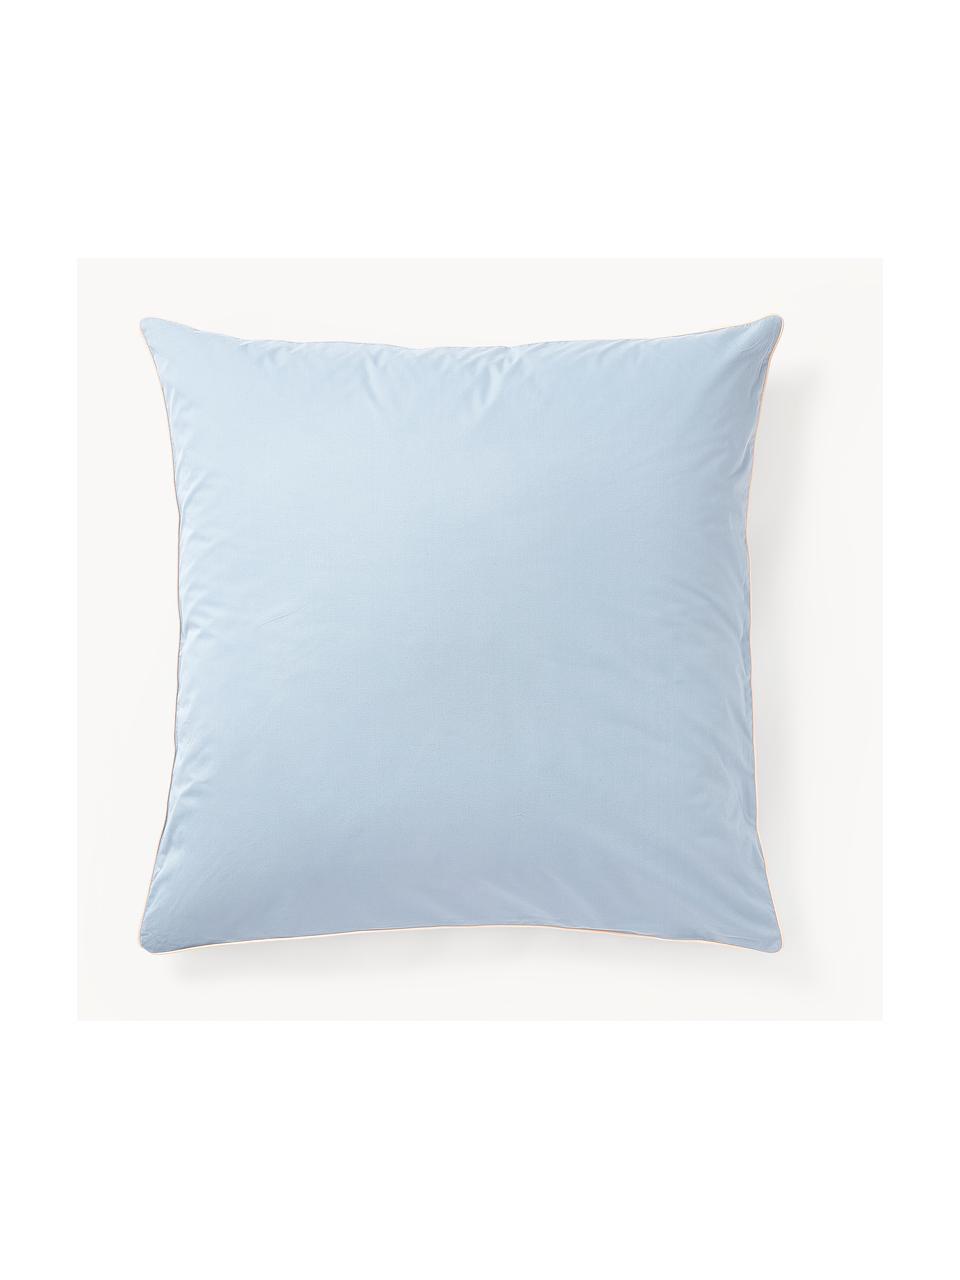 Taie d'oreiller en percale de coton avec passepoil Daria, Bleu ciel, beige clair, larg. 50 x long. 70 cm